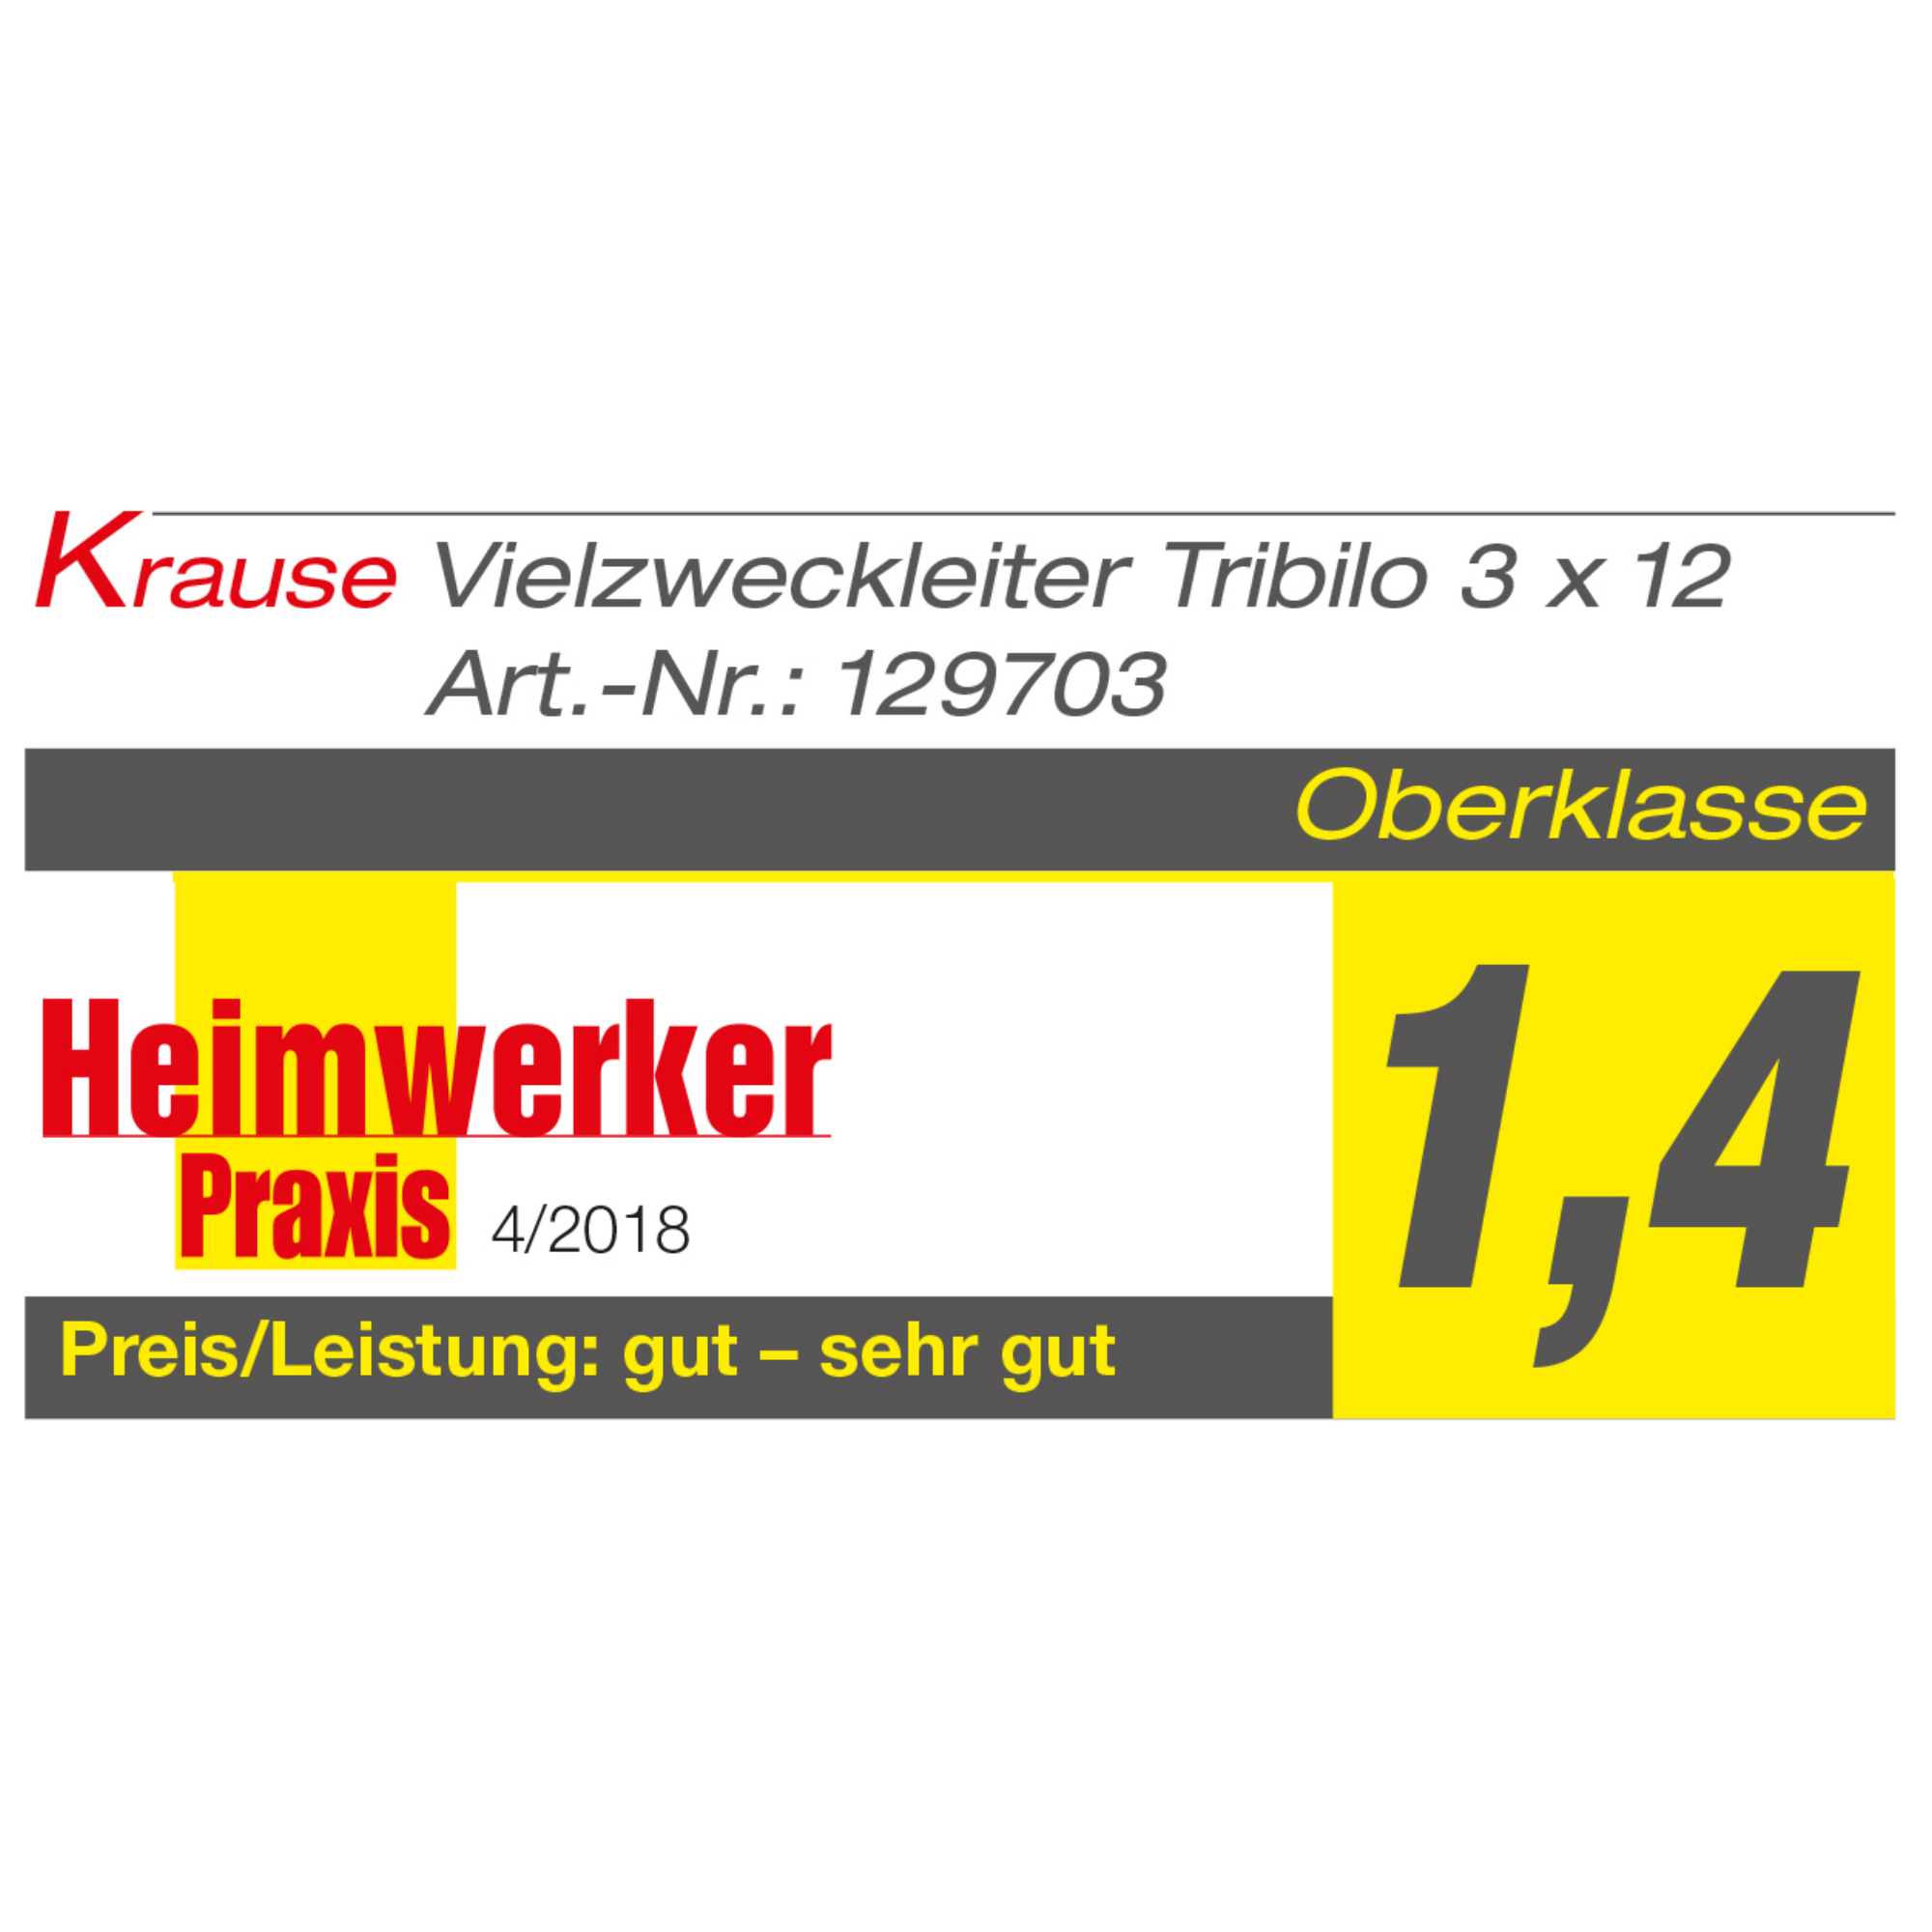 Krause Vielzweckleiter 'Tribilo' 3 x 12 Sprossen + product picture